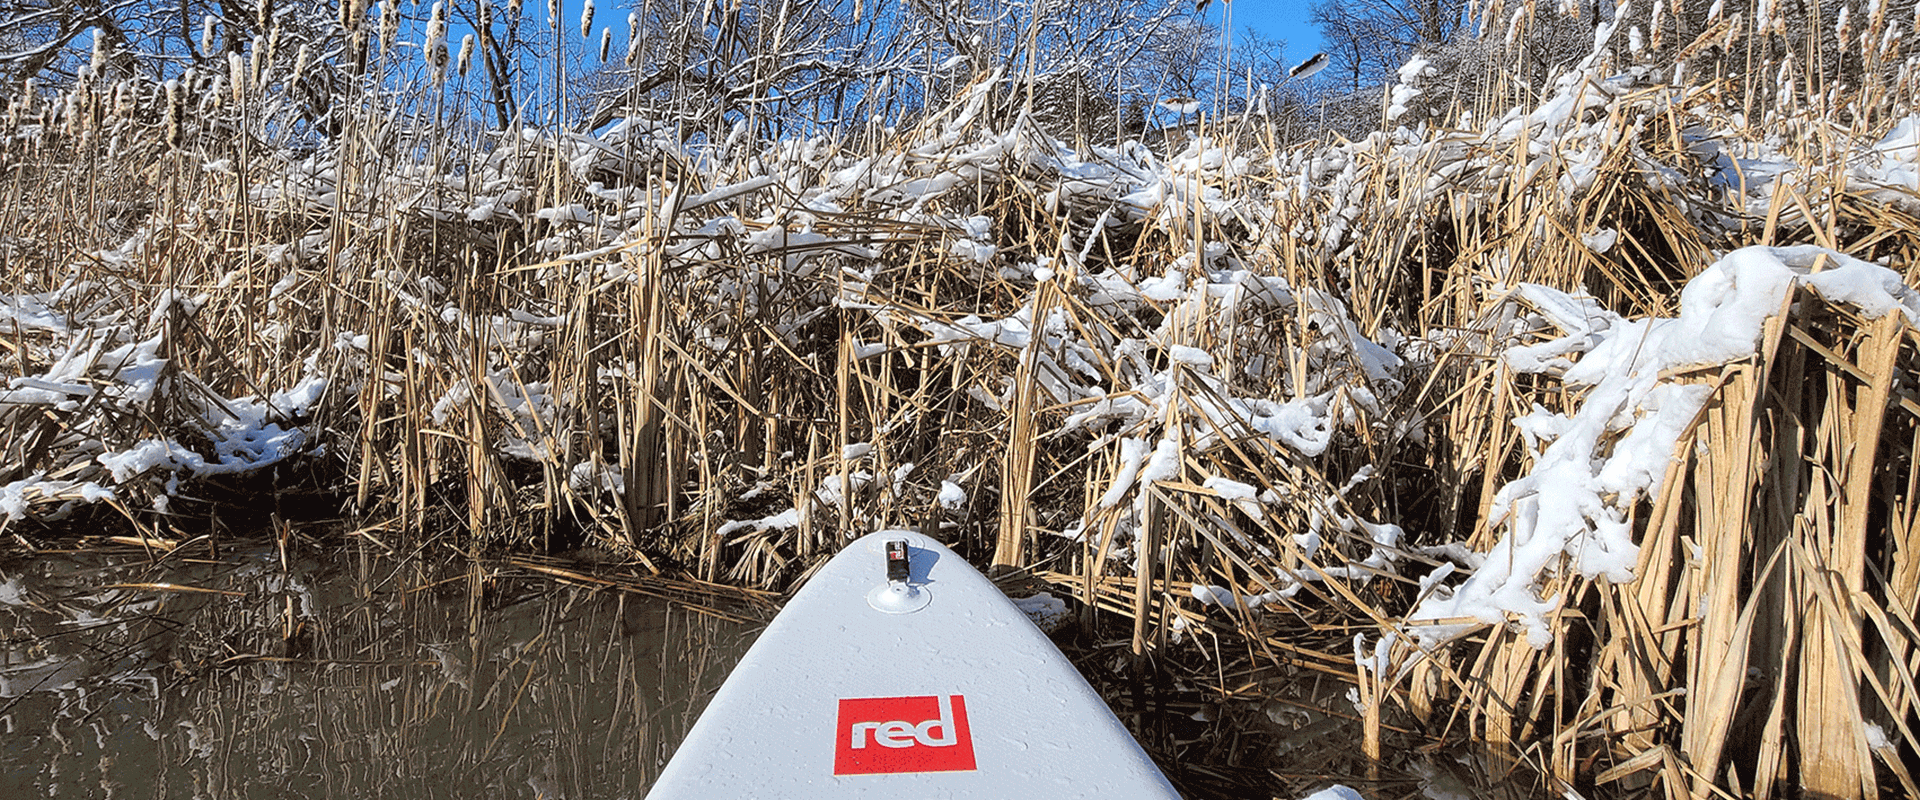 Die Spitze eines Red Paddleboards auf einem Gewaesser in einer Winterlandschaft